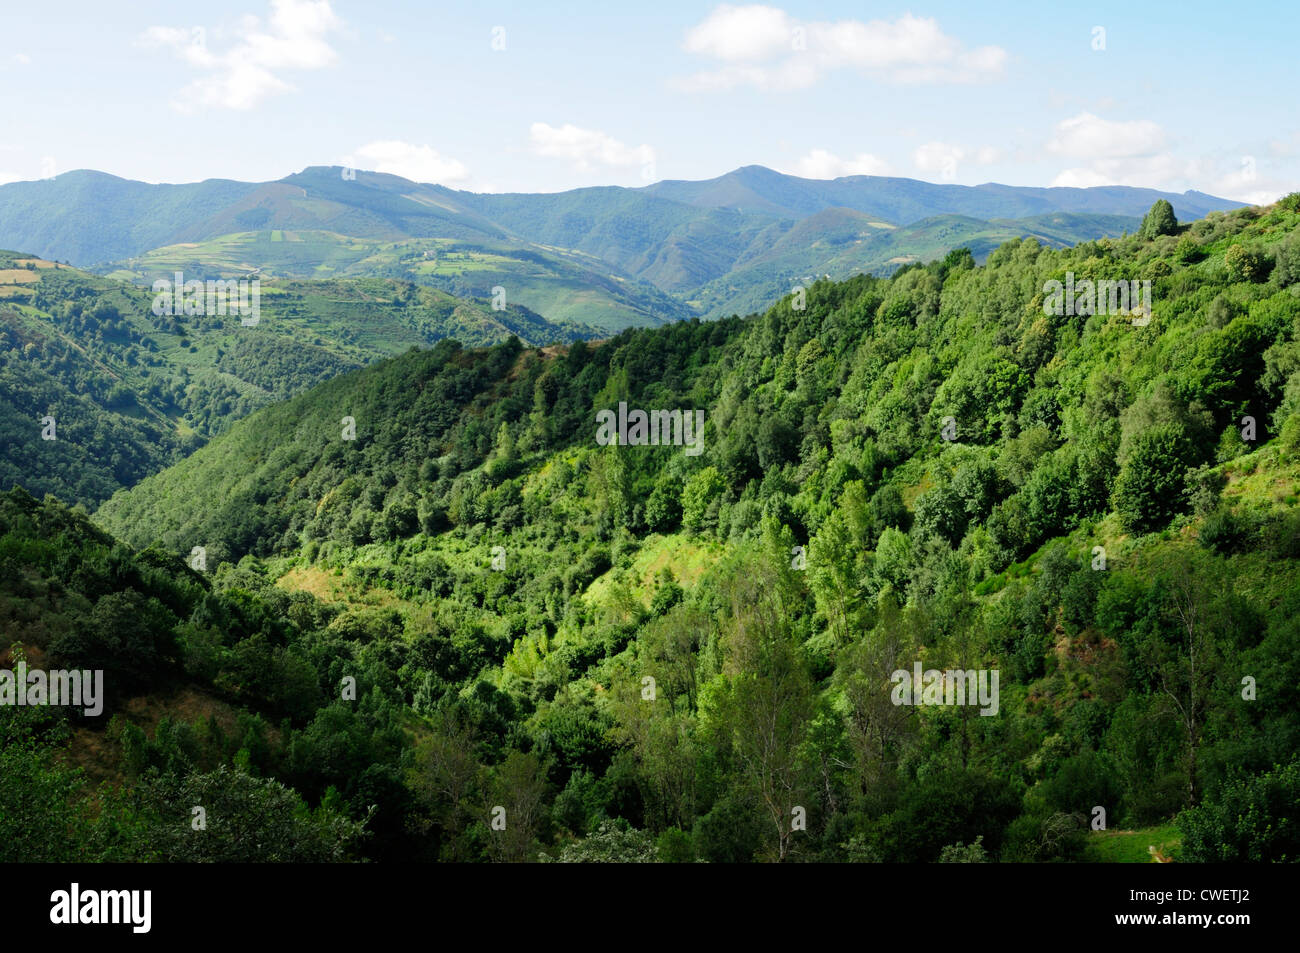 O Courel mountain range. Lugo, Galicia, Spain Stock Photo